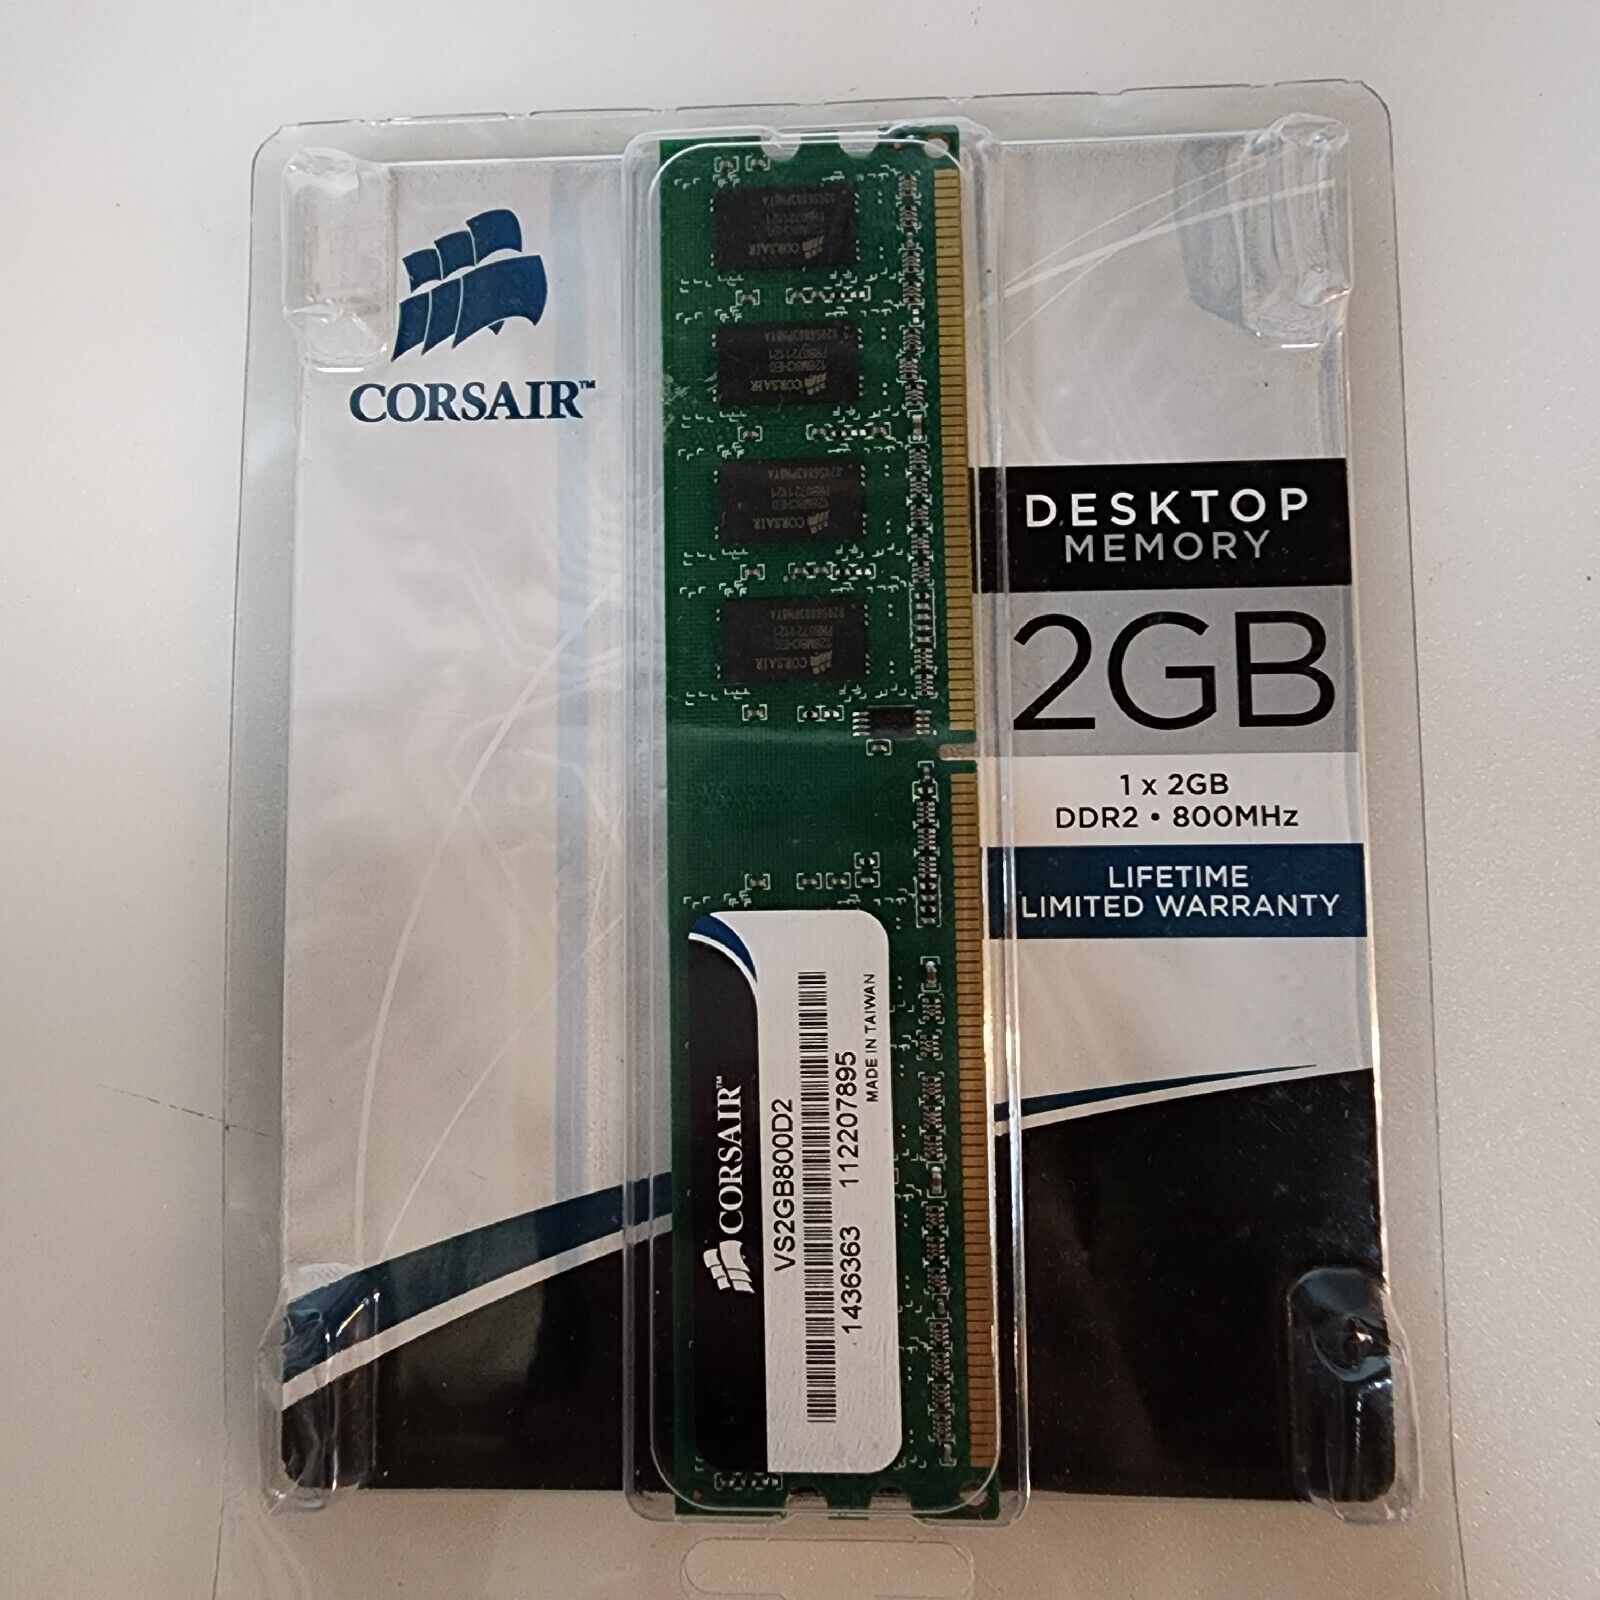 Corsair 2GB DDR 800 MHz Desktop Memory VS2GB800D2 New